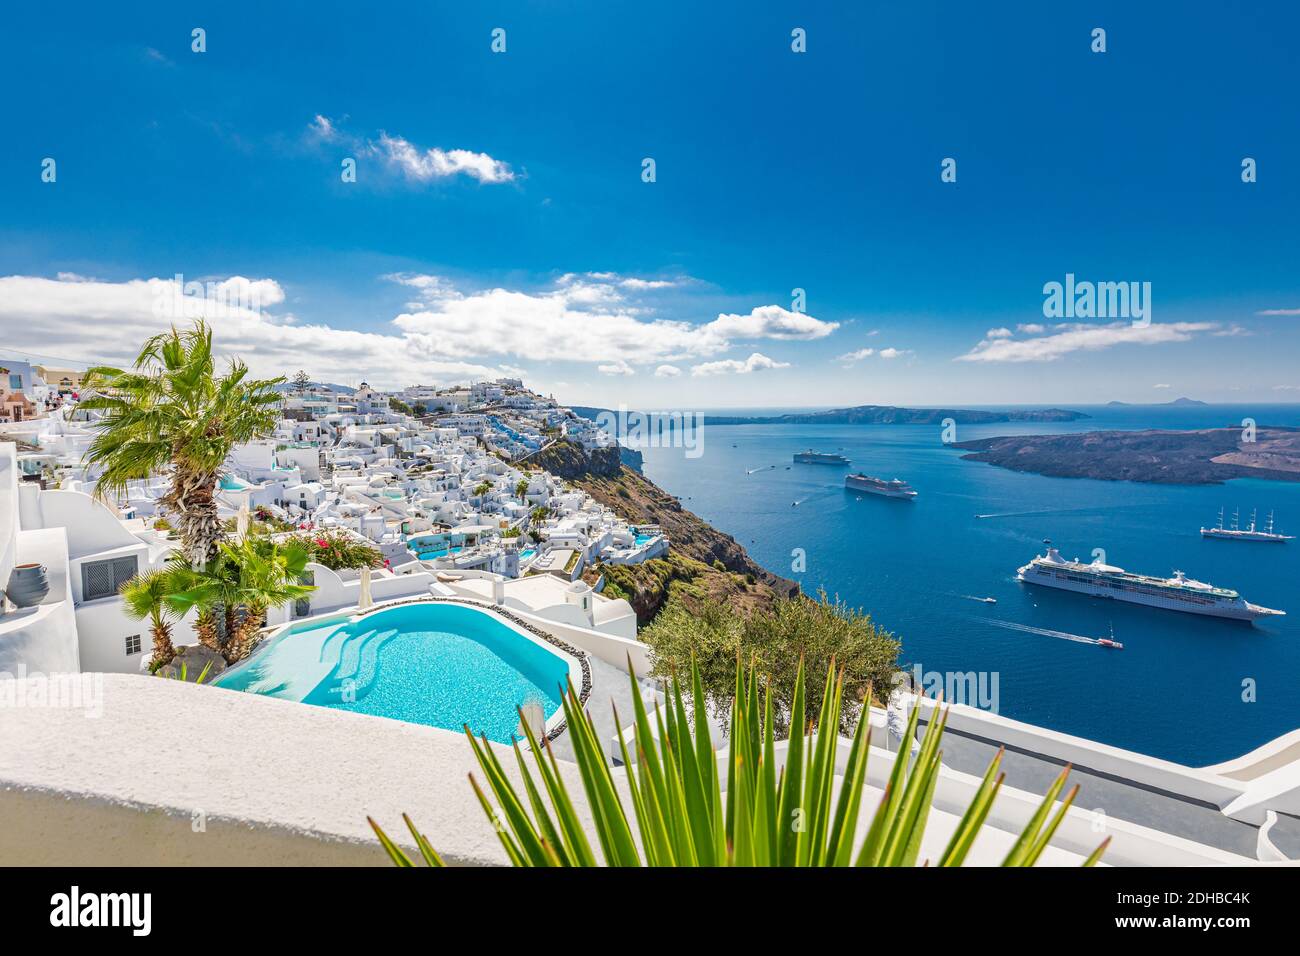 Voyage incroyable paysage de vacances, destination d'été à Santorini, Oia. Architecture blanche, piscine, vue romantique sur la mer avec bateaux de croisière. Scène idyllique Banque D'Images